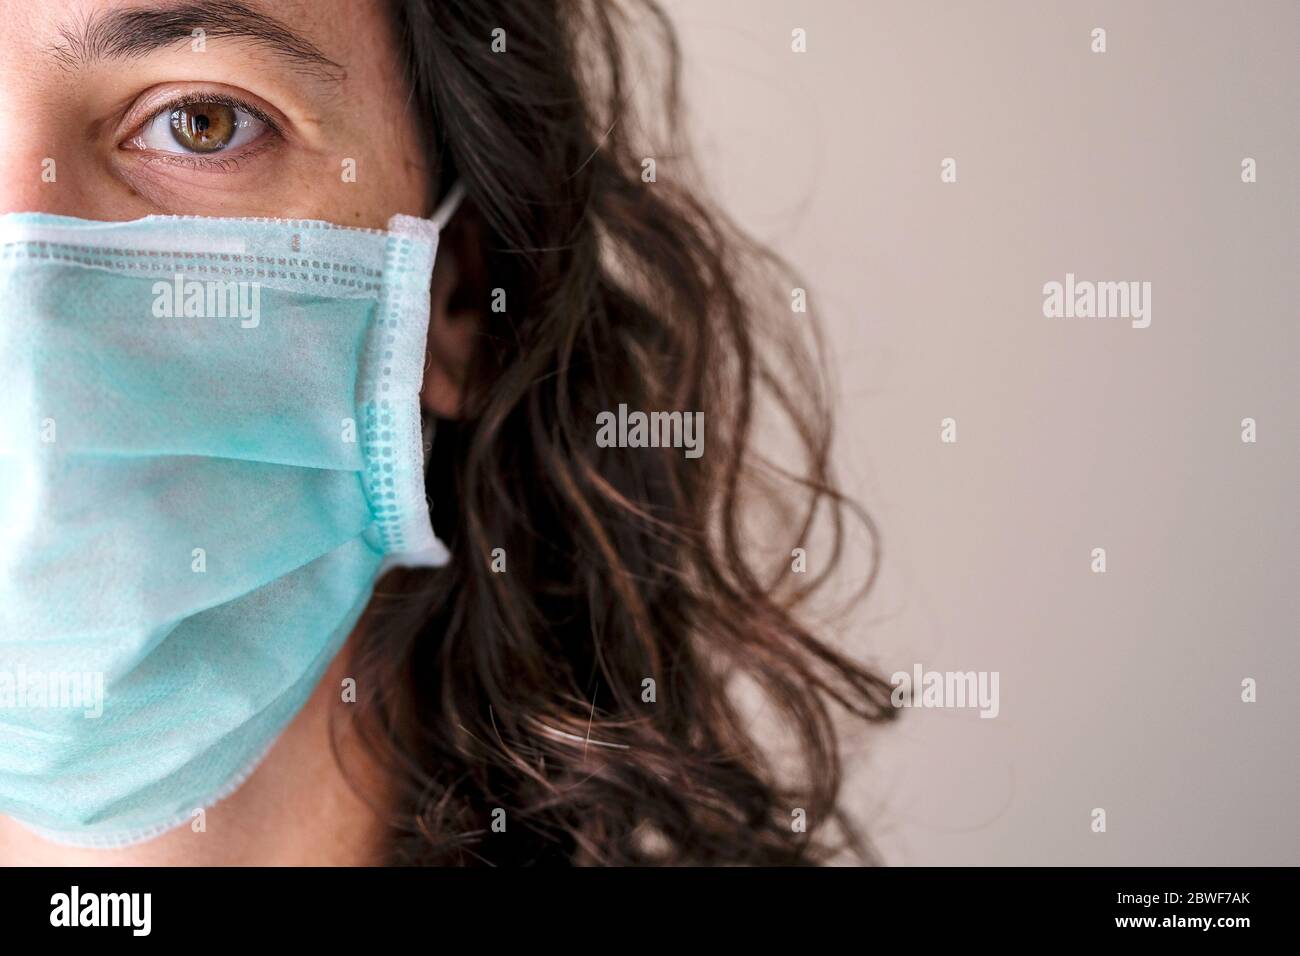 Mujer que usa una máscara protectora para prevenir el COVID-19 y otras infecciones. Foto de stock